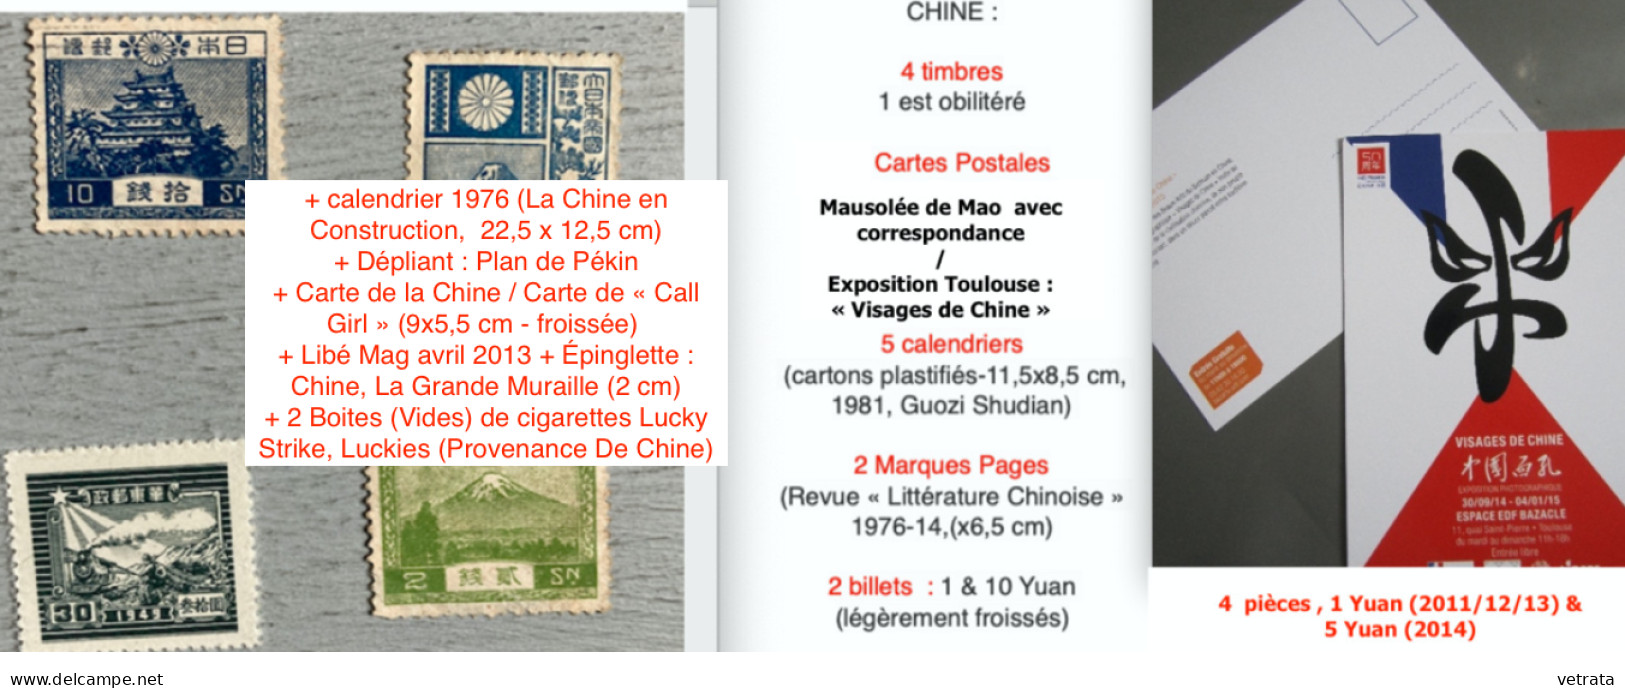 CHINE : 1 Album, 1 Guide & 1 Revue. CHINE (Larousse-Monde & Voyages-1988) / Guide Hachette Visa : À Pékin & En Chine, 19 - Lots De Plusieurs Livres